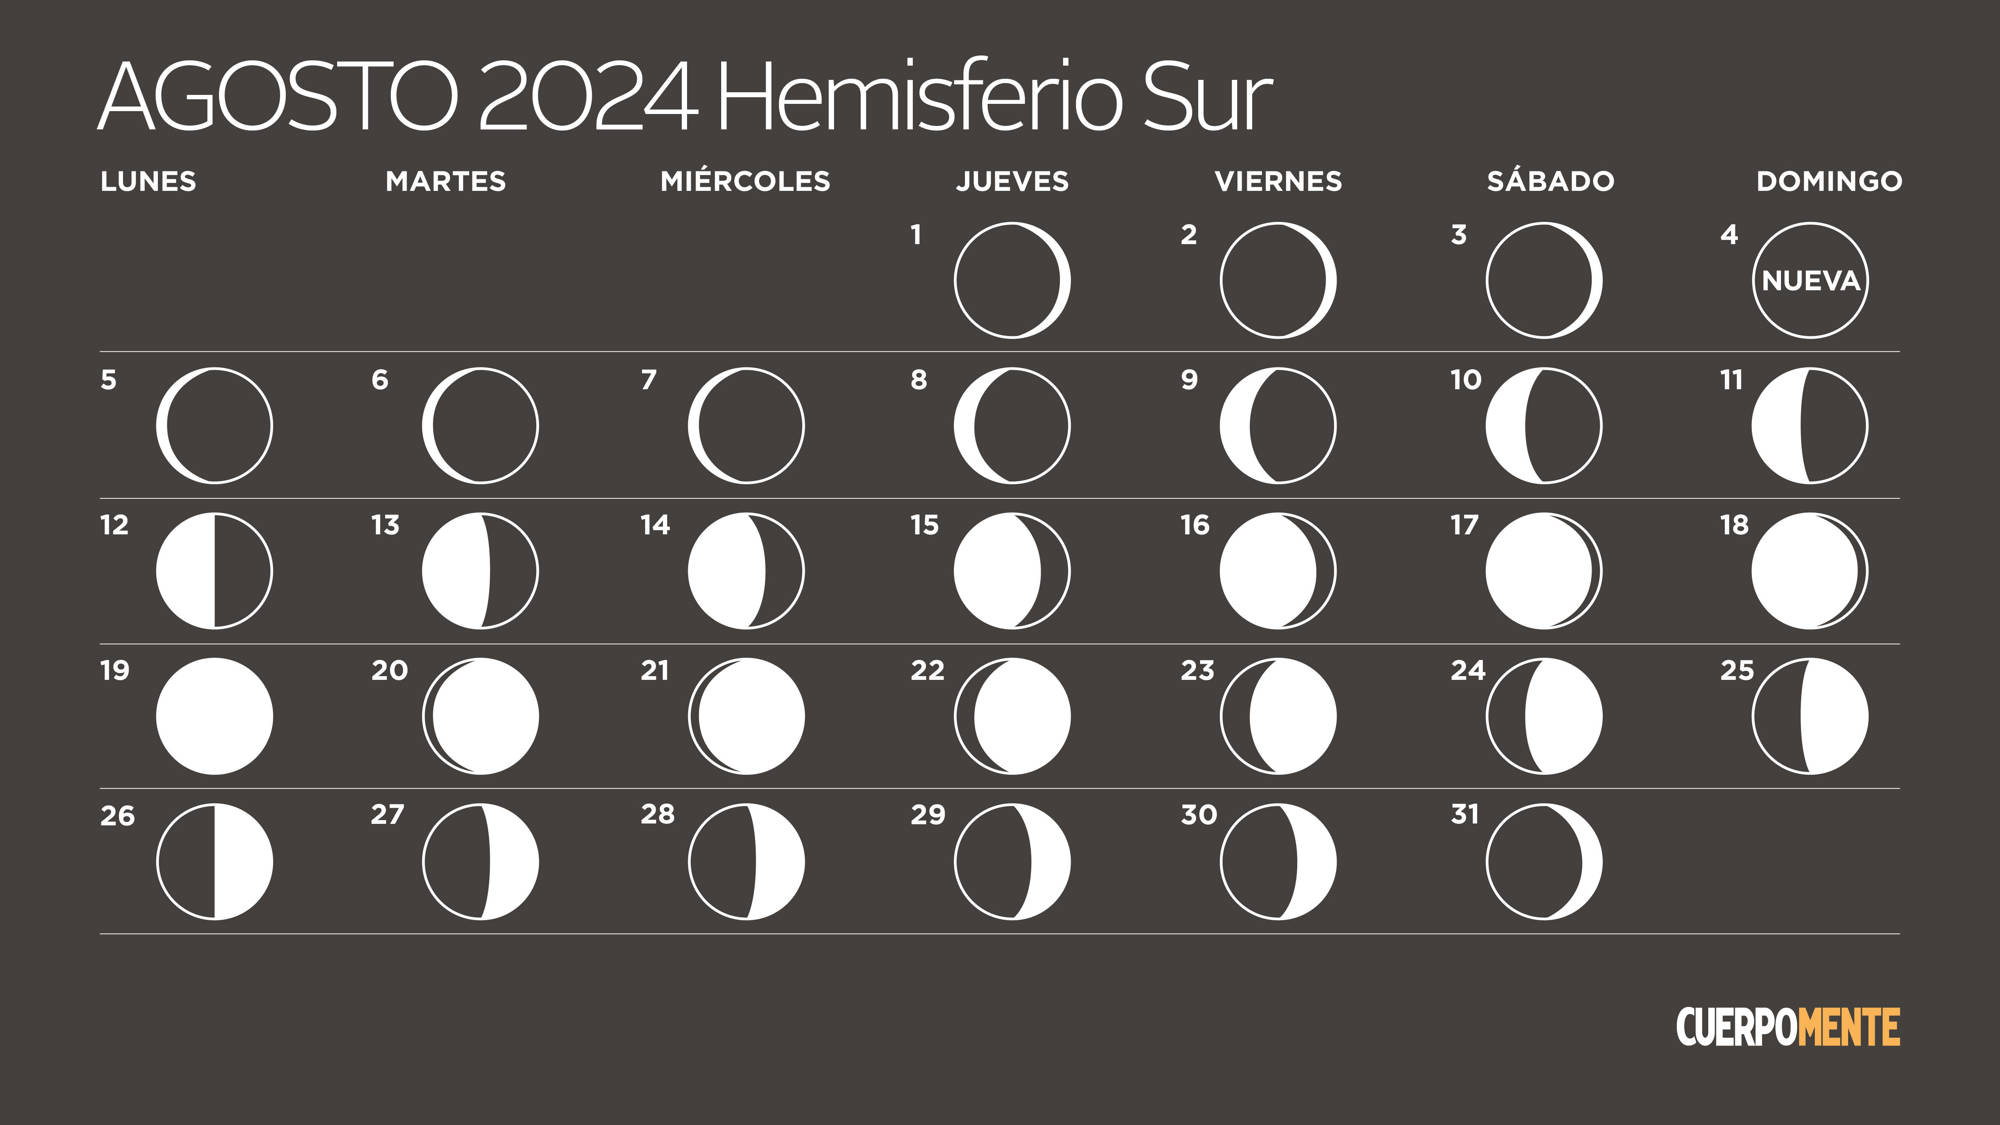 Calendario lunar de agosto 2024 (hemisferio sur)